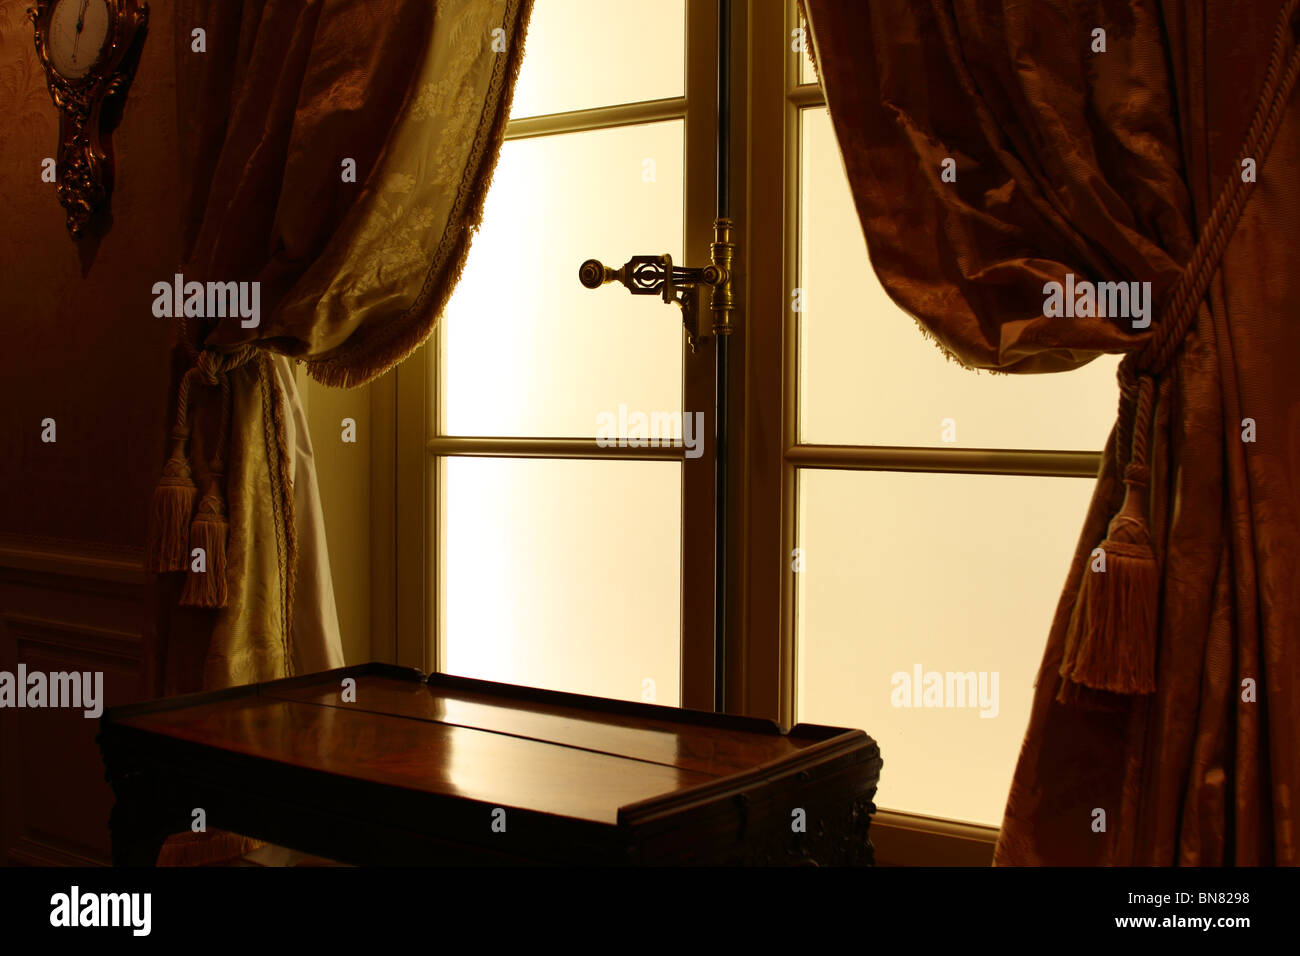 Lumière tamisée sur cadre jaune avec fenêtre en verre fumé table console entre les rideaux or jaune noué sur glands. Banque D'Images